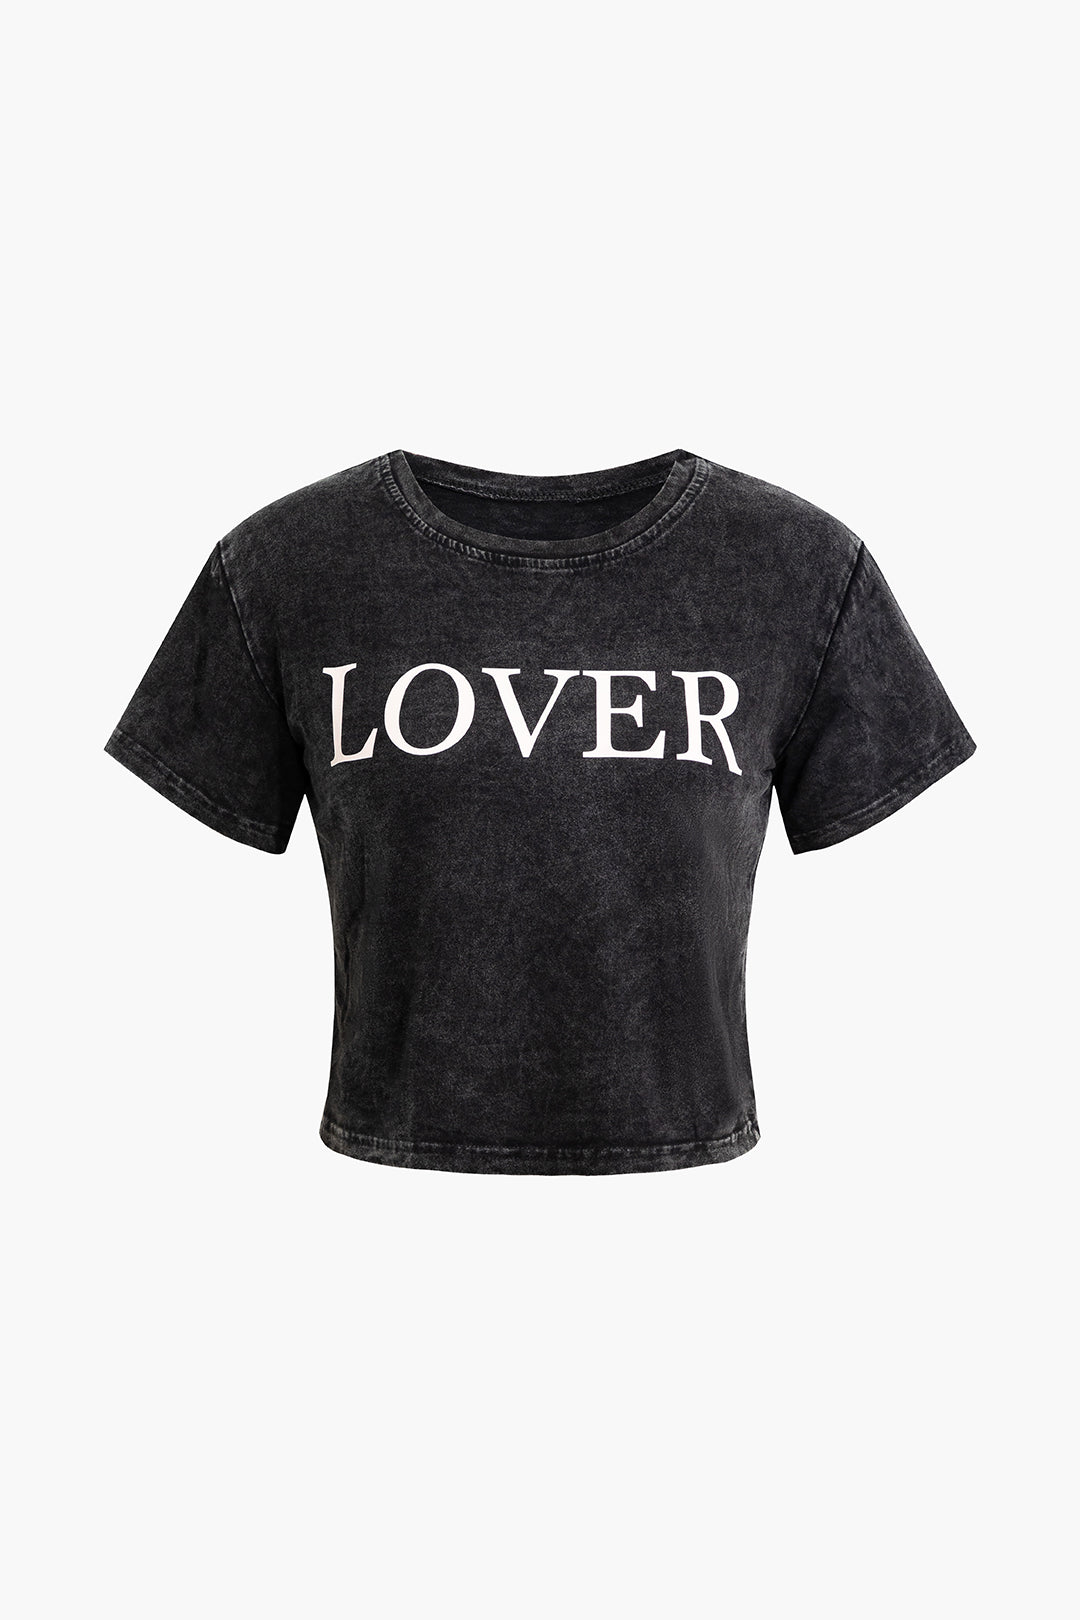 Lover Letter Print Short Sleeve T-Shirt